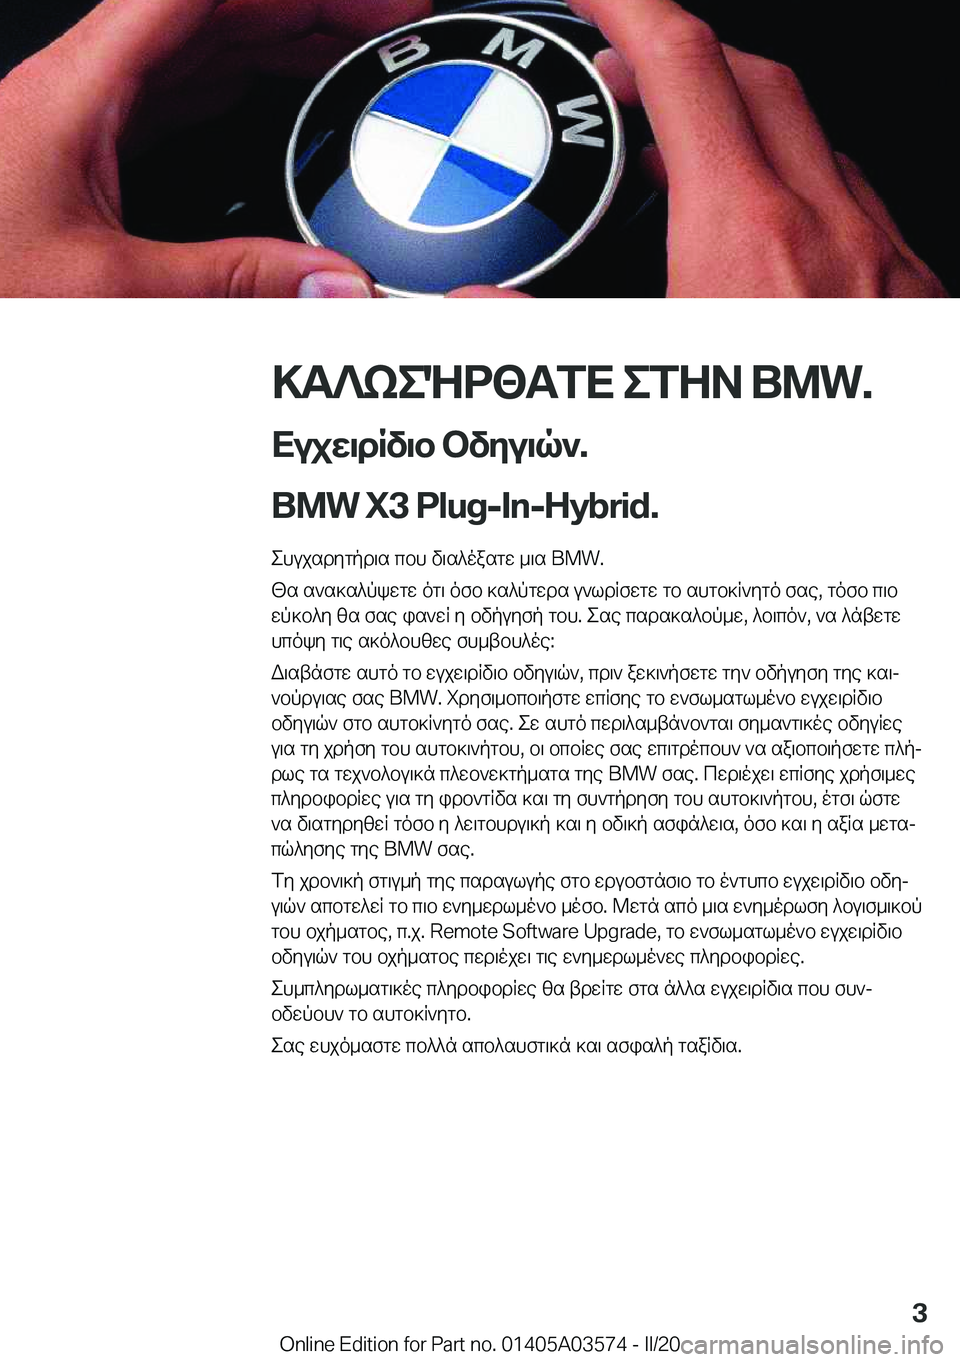 BMW X3 PLUG IN HYBRID 2020  ΟΔΗΓΌΣ ΧΡΉΣΗΣ (in Greek) >T?keNd<TfX�efZA��B�M�W�.
Xujw\dRv\b�bvyu\q`�.
�B�M�W��X�3��P�l�u�g�-�I�n�-�H�y�b�r�i�d�. ehujsdygpd\s�cbh�v\s^oasgw�_\s��B�M�W�.[